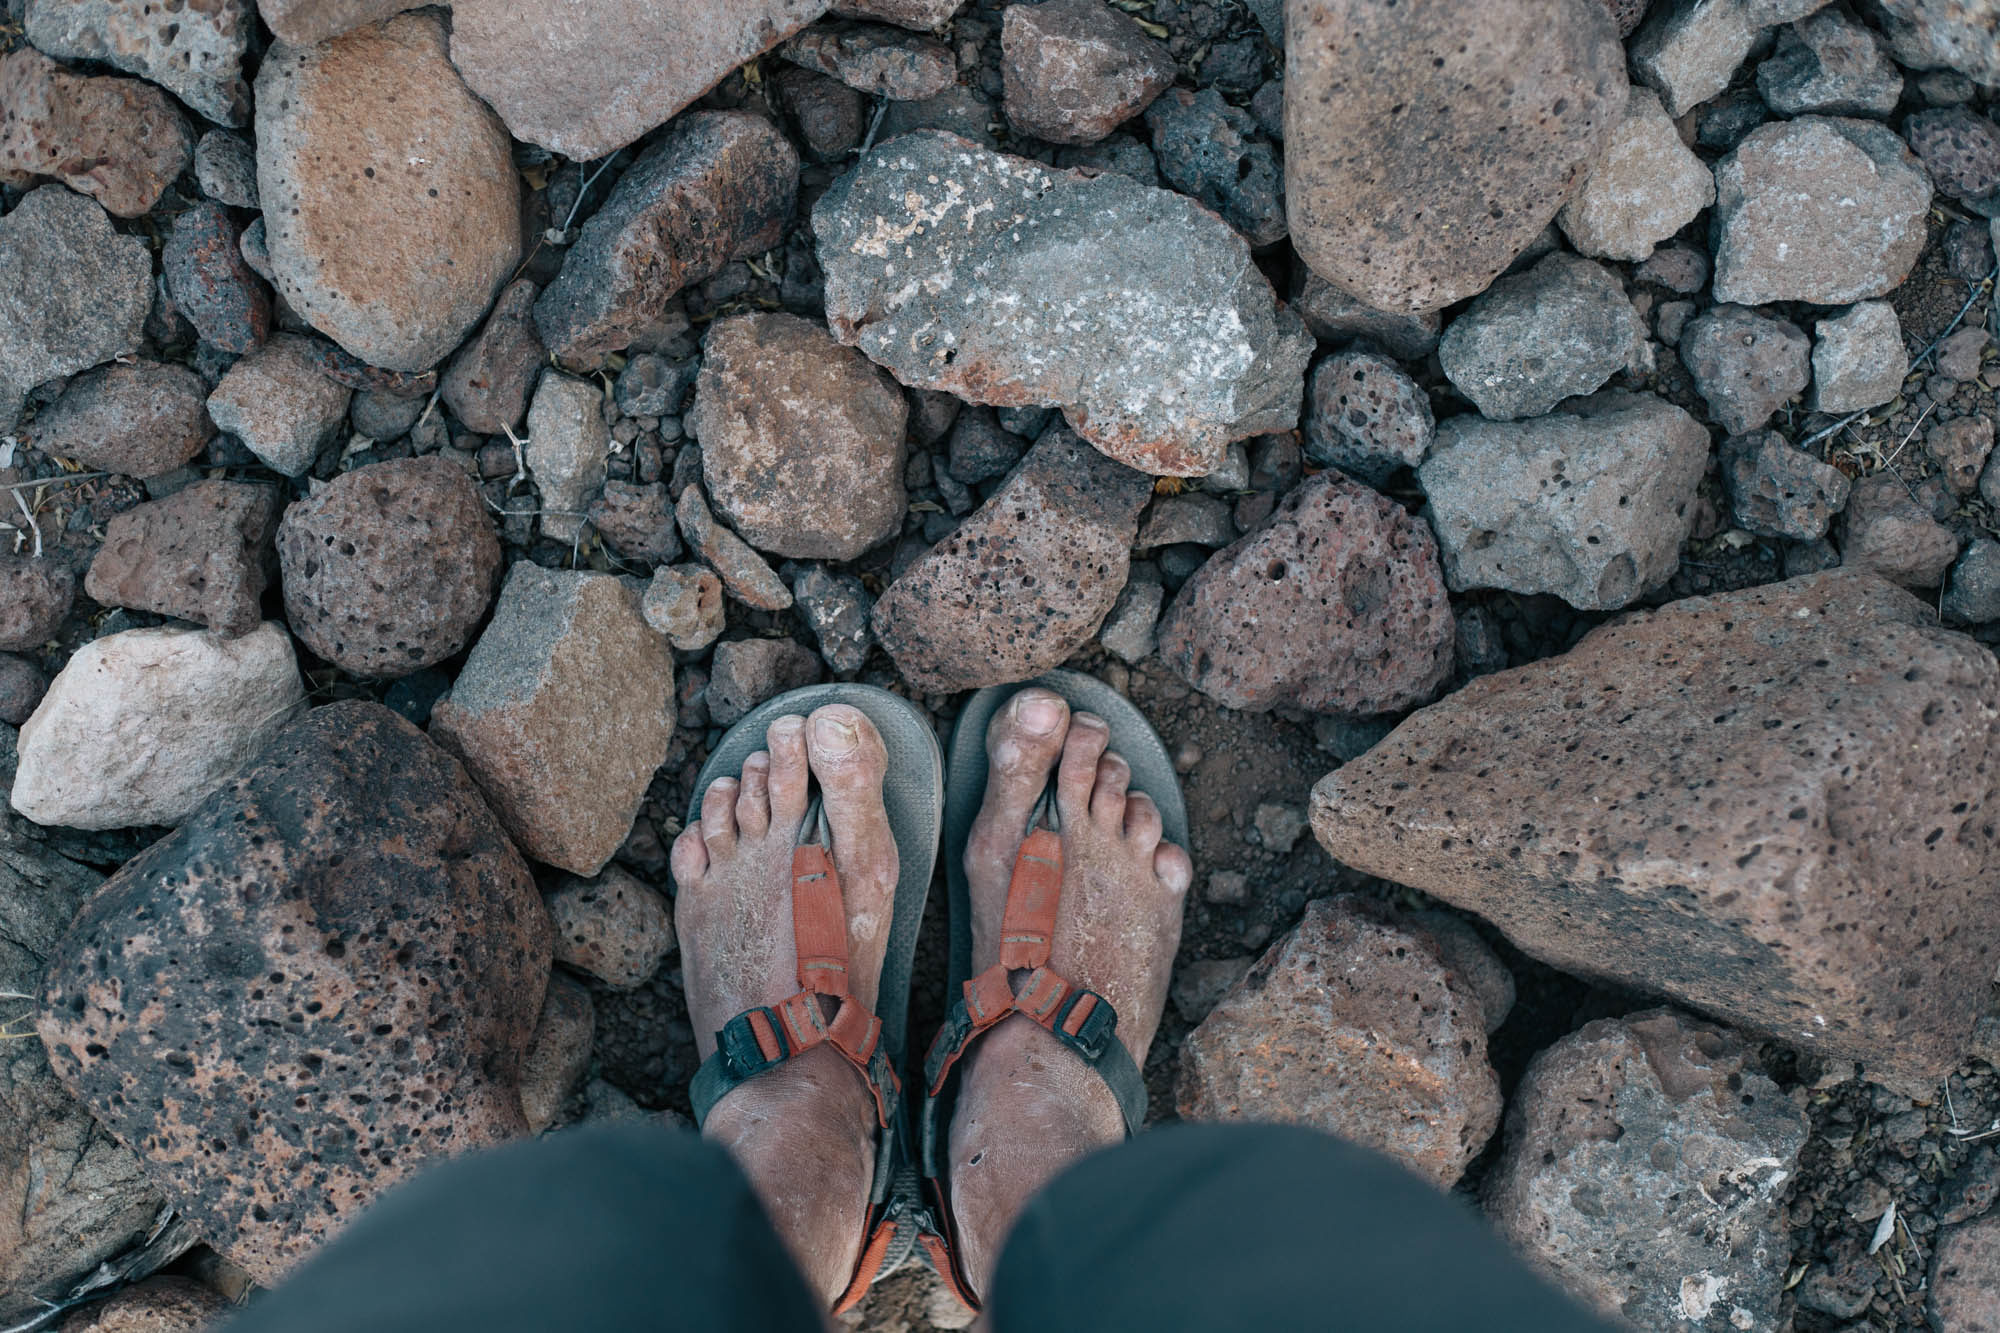 Bedrock Cairn Adventure Sandals Review